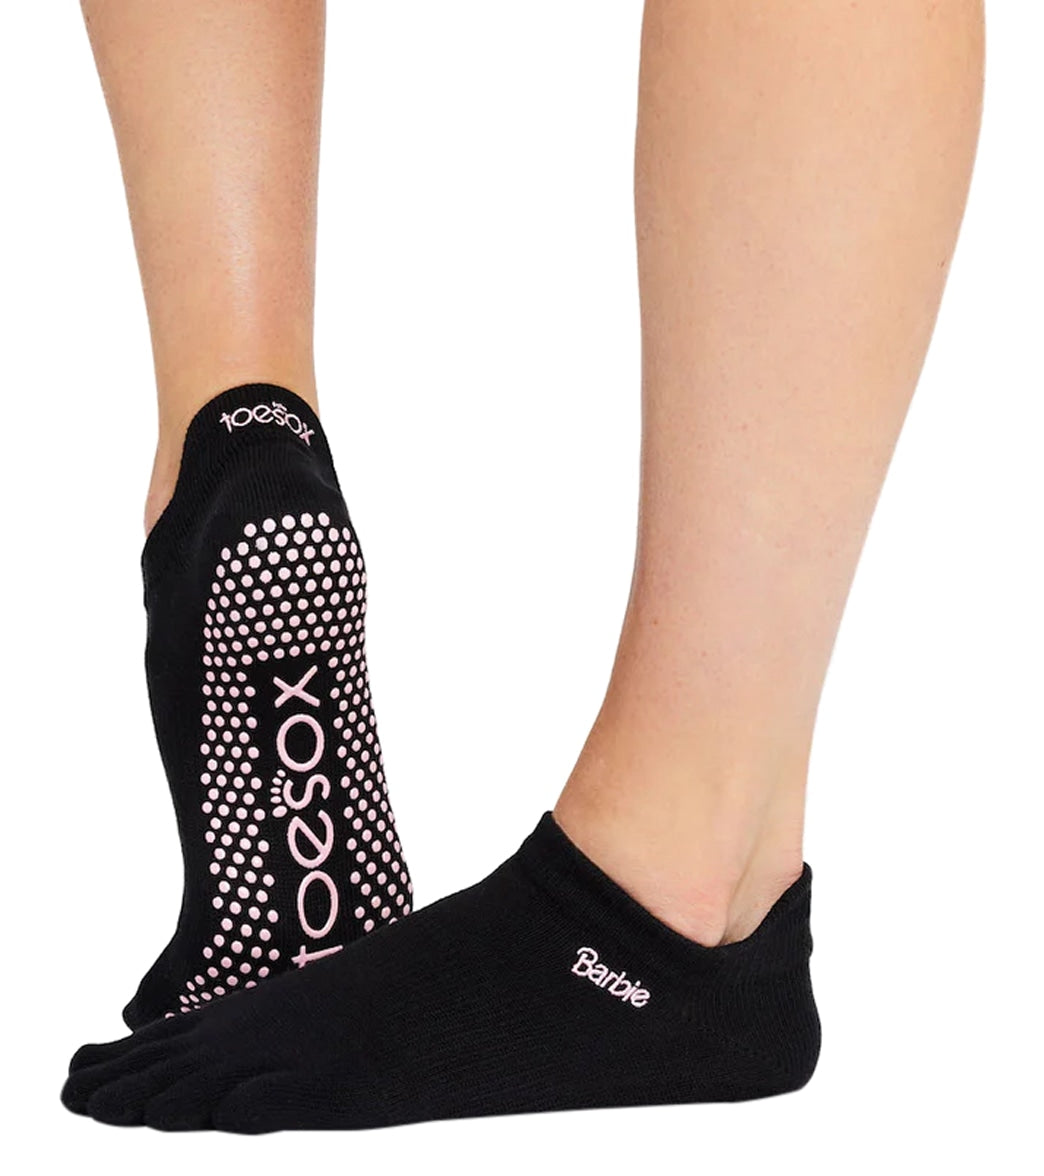 Toesox Grip Full Toe Low Rise Socks at